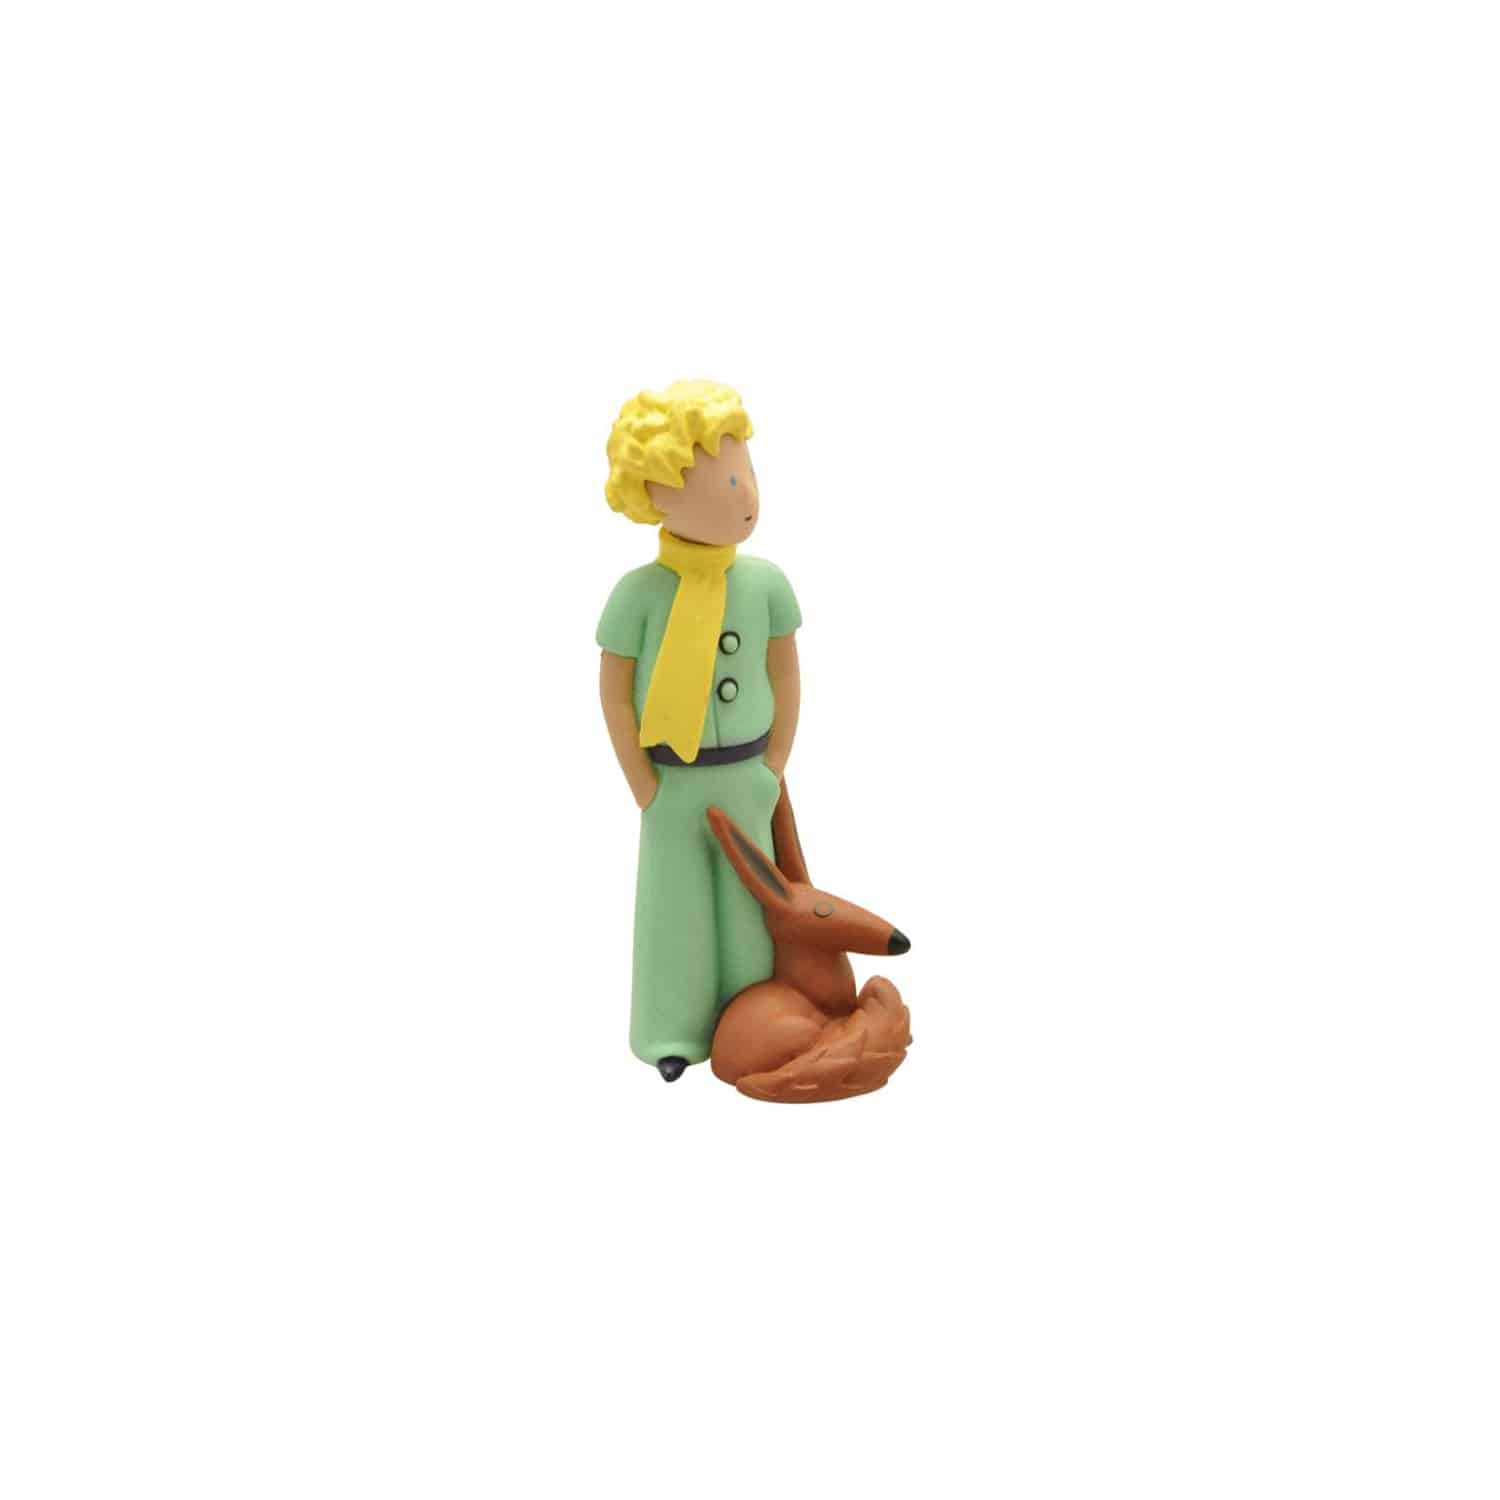 The Little Prince - The Little Prince & The Fox Figure